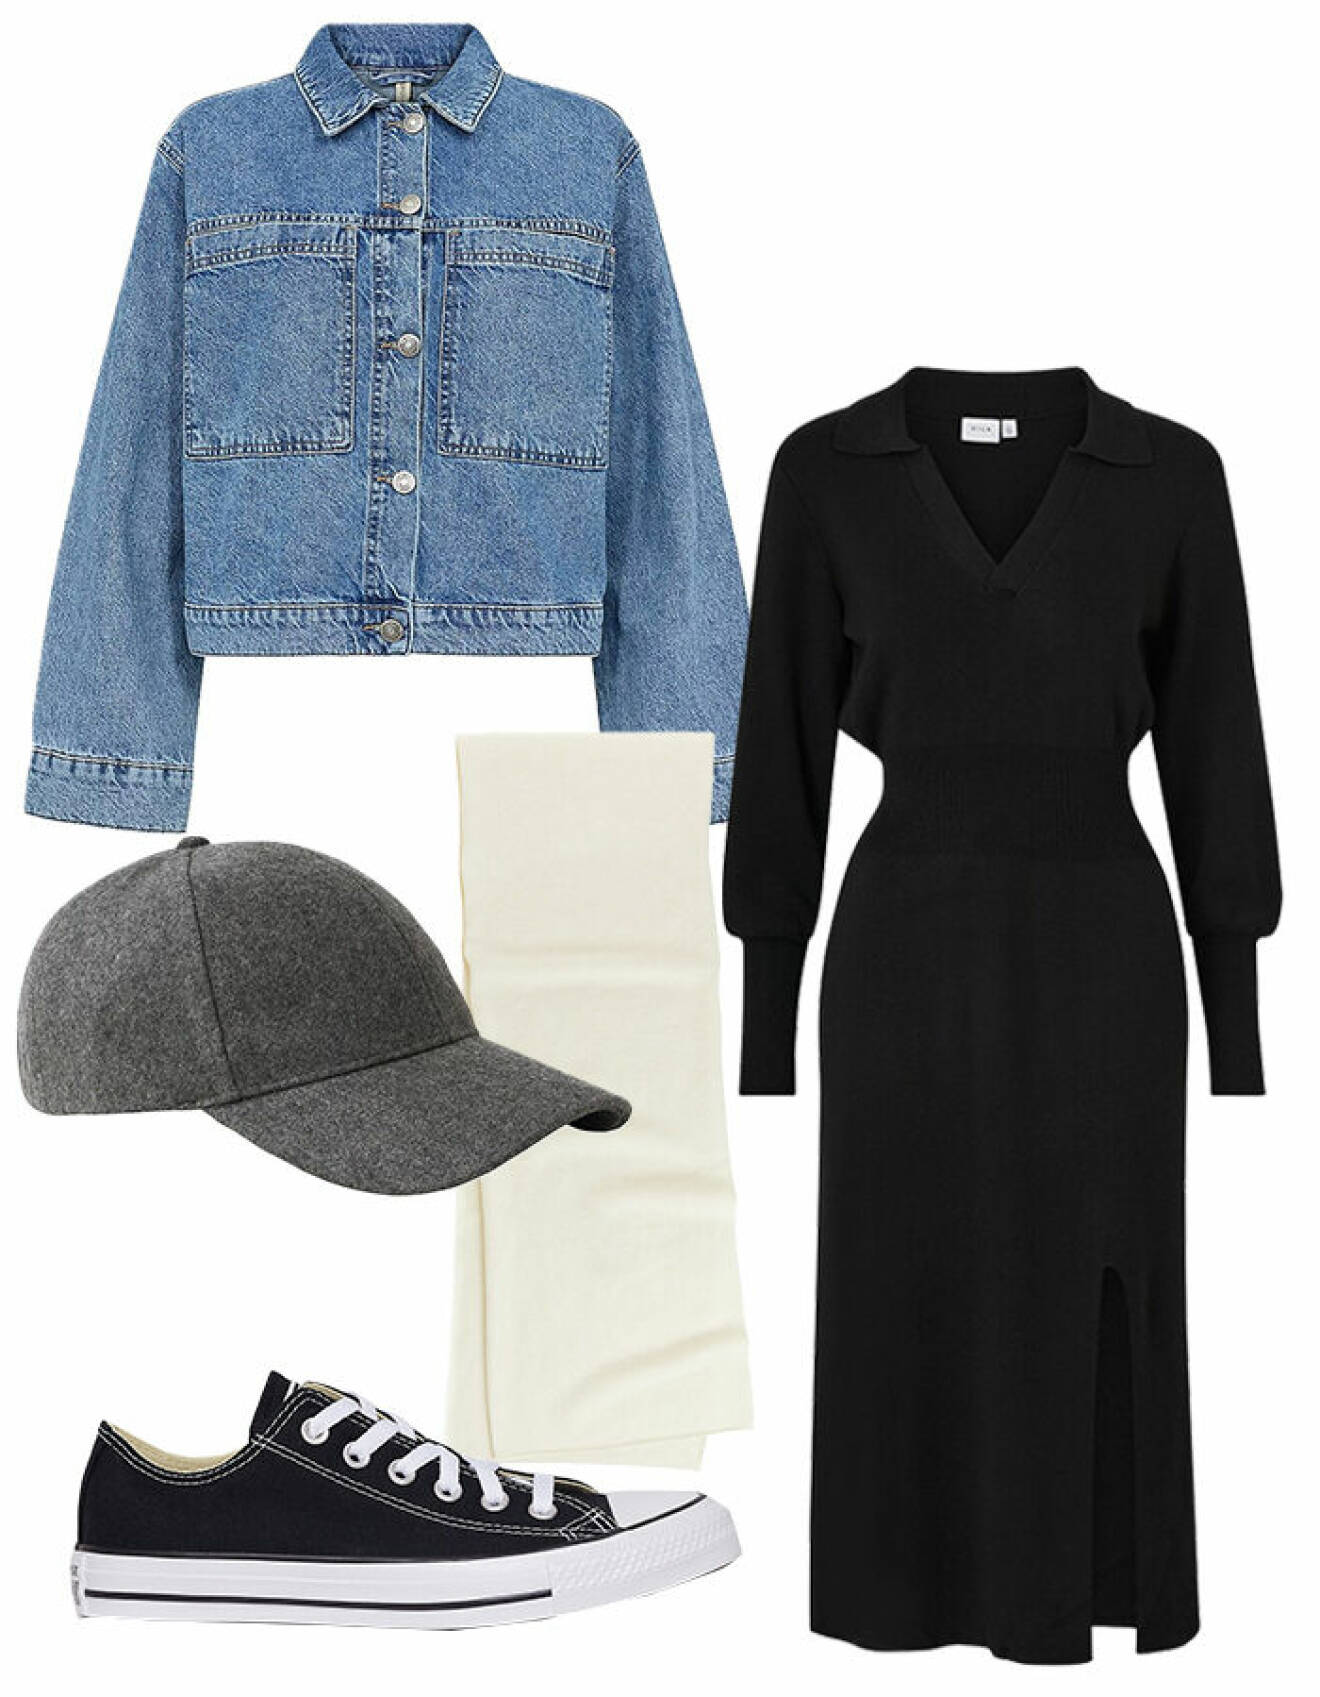 Outfit med svart stickad klänning, jeansjacka, keps, halsduk och låga Converse